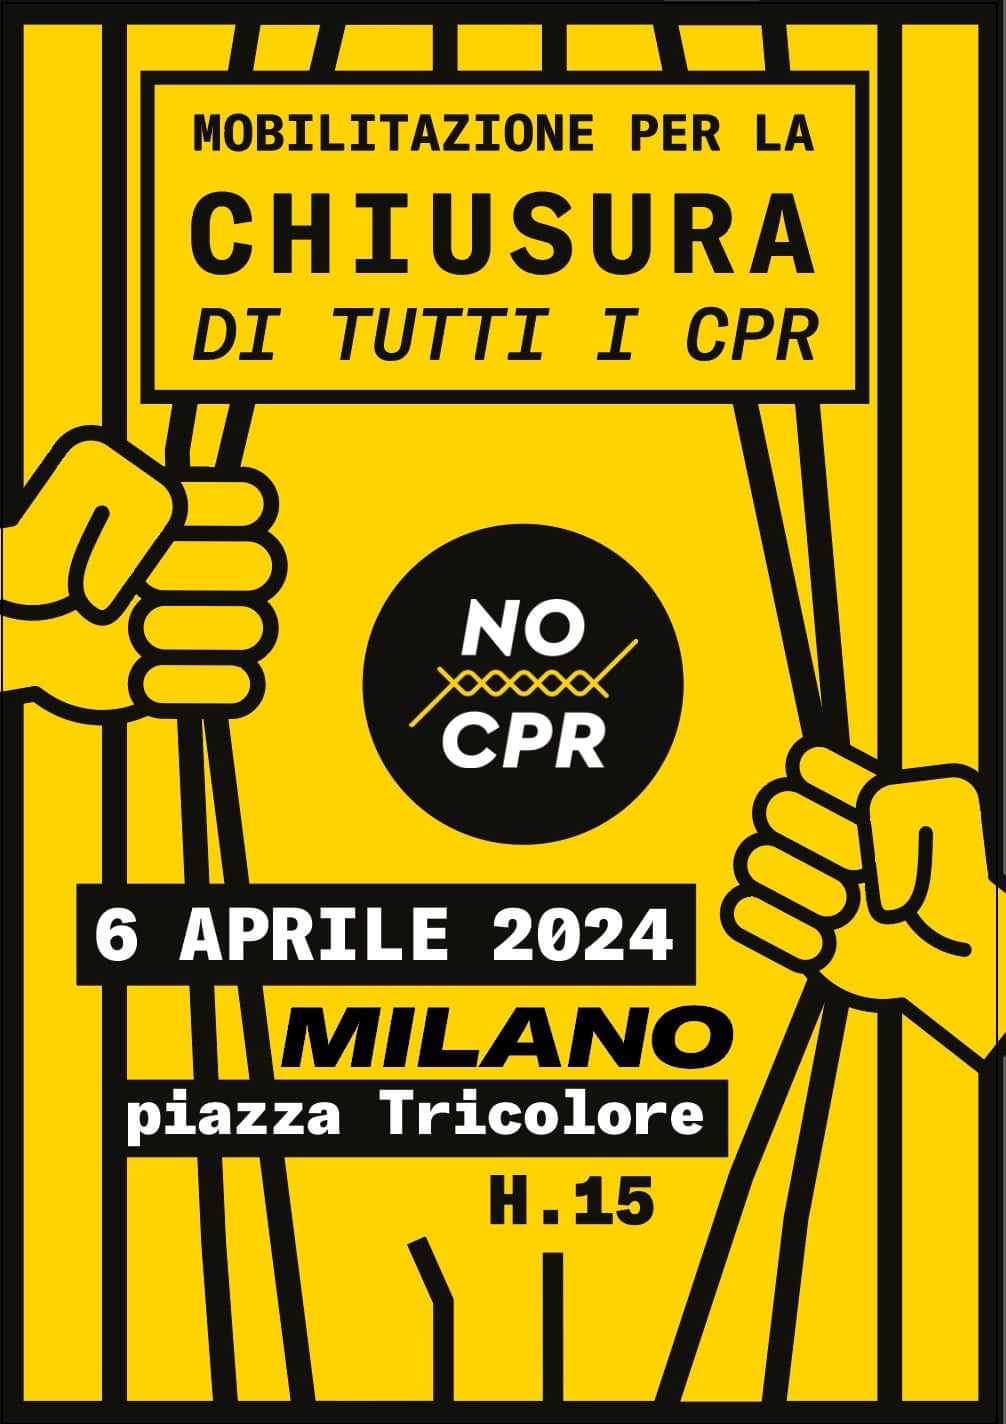 La Casa delle Donne di Milano aderisce alla mobilitazione per la chiusura di tutti i CPR